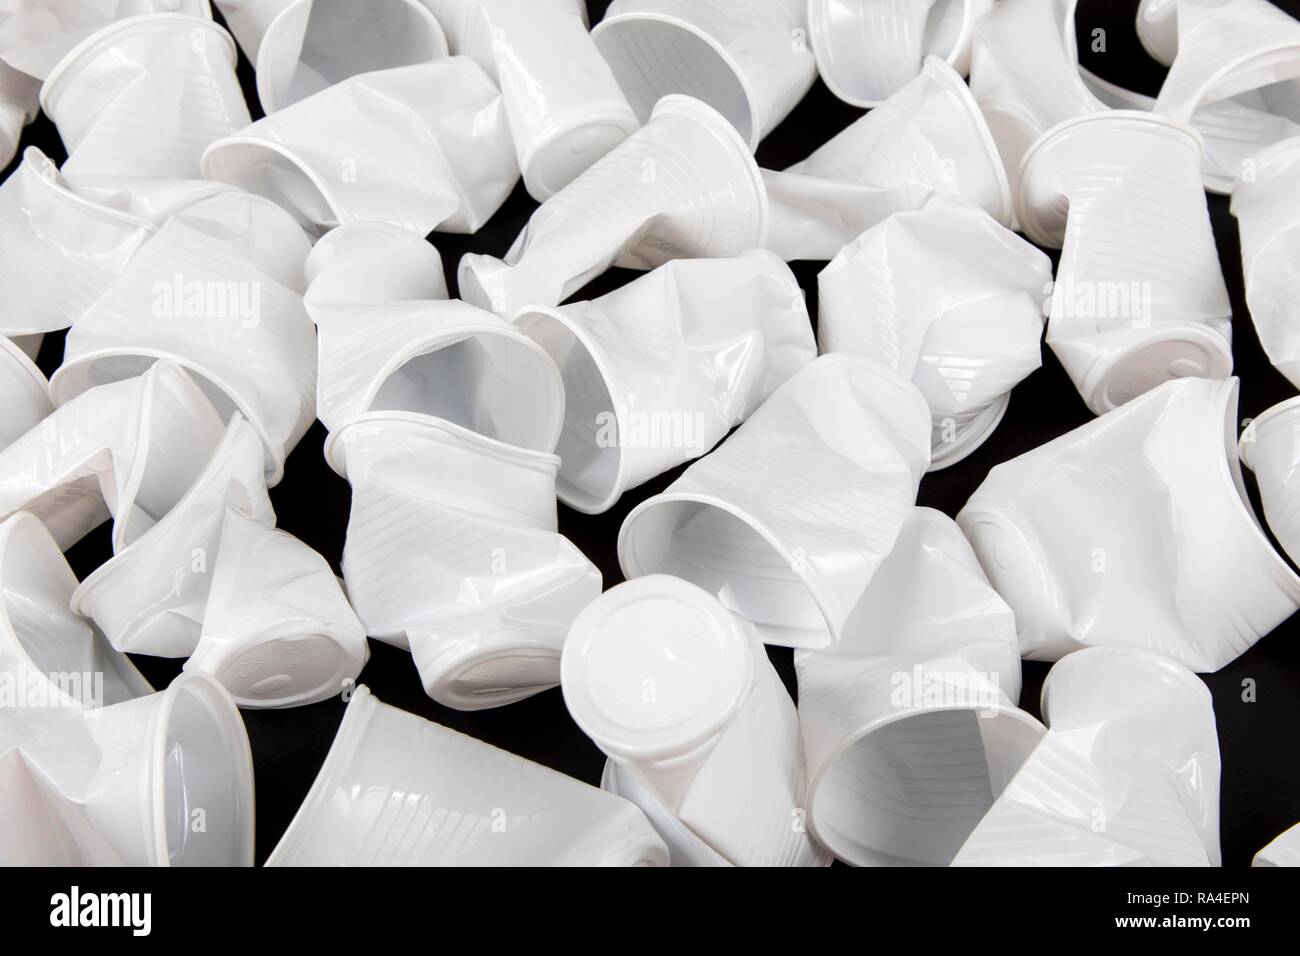 Copa desechable, vaso de plástico, en blanco, 0, 2 litros de agua potable, copa, Copa desechables, residuos plásticos, usados, aplastado, arrugado Foto de stock